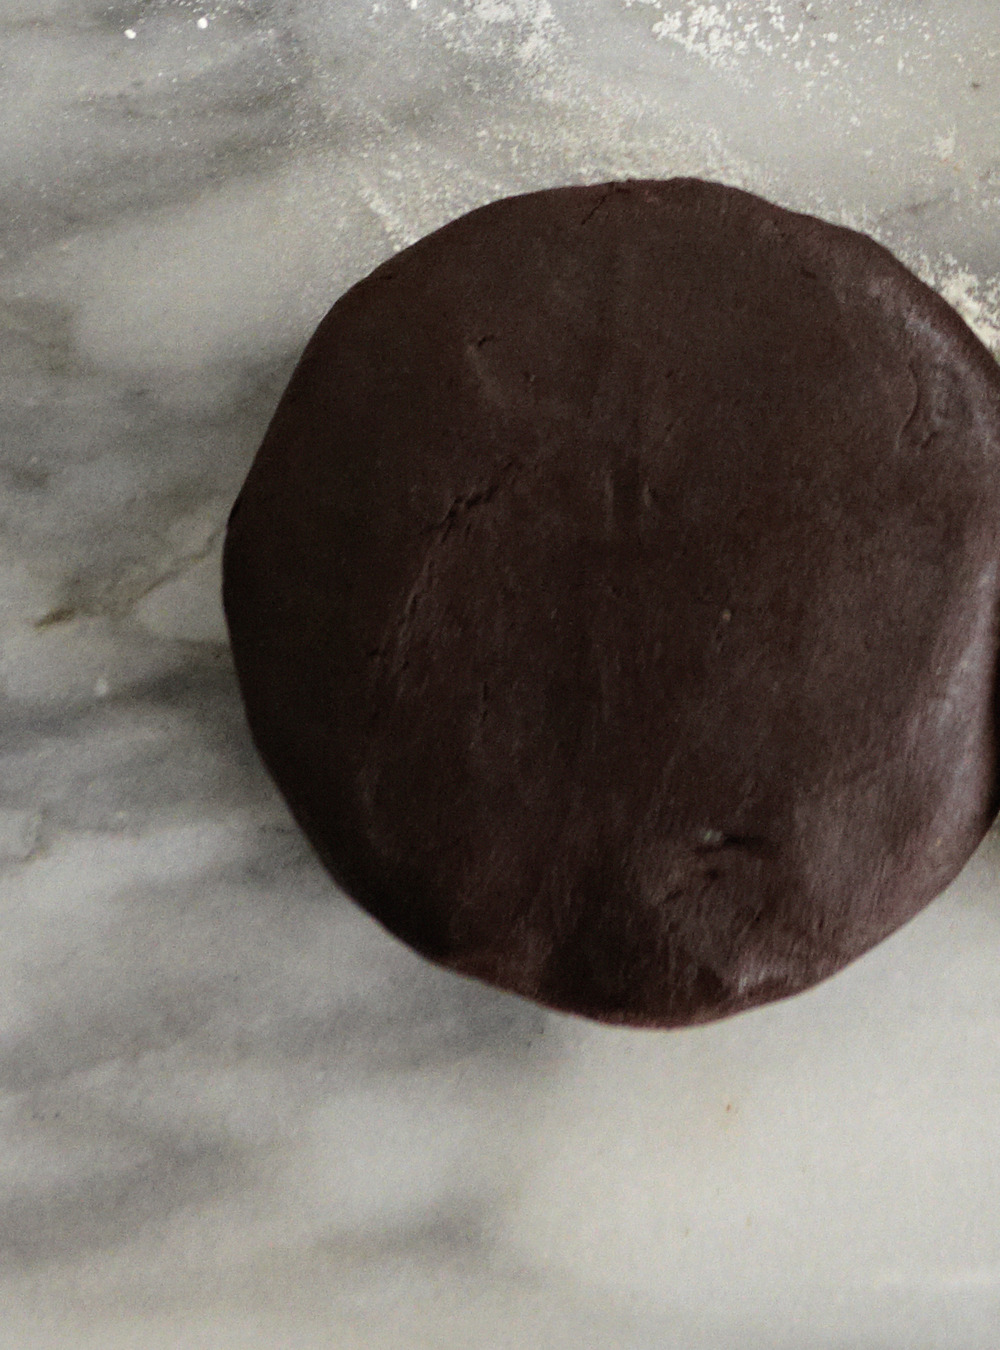 Biscuits au chocolat de base